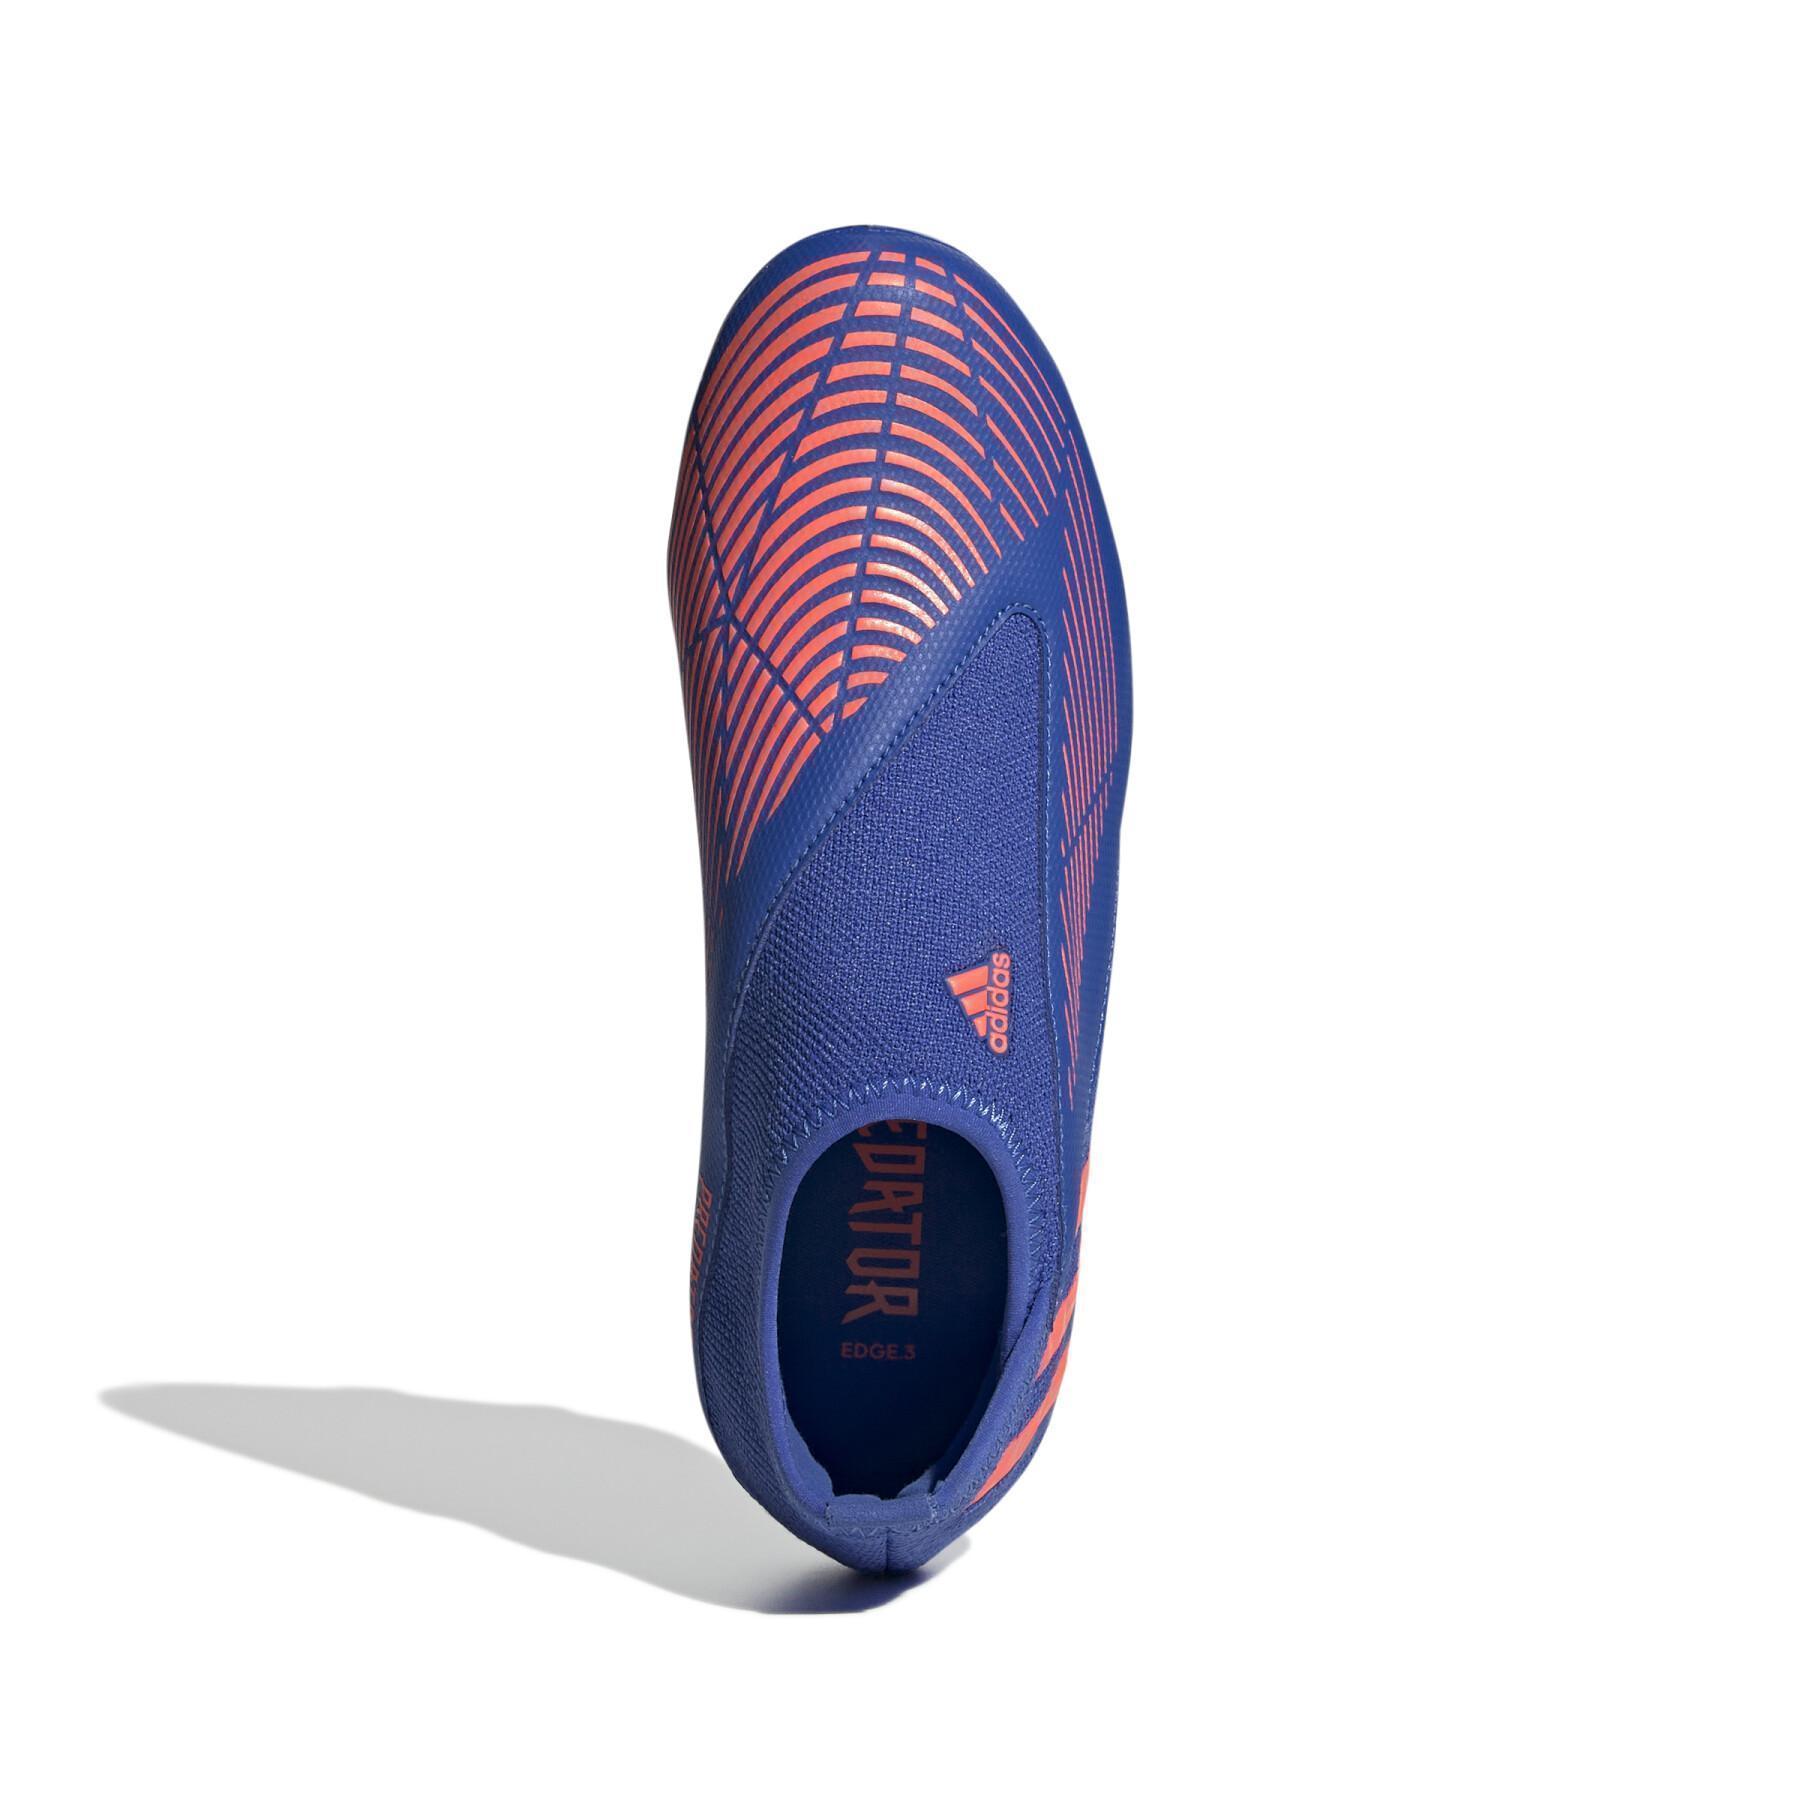 Dziecięce buty piłkarskie adidas Predator Edge.3 Laceless FG - Sapphire Edge Pack